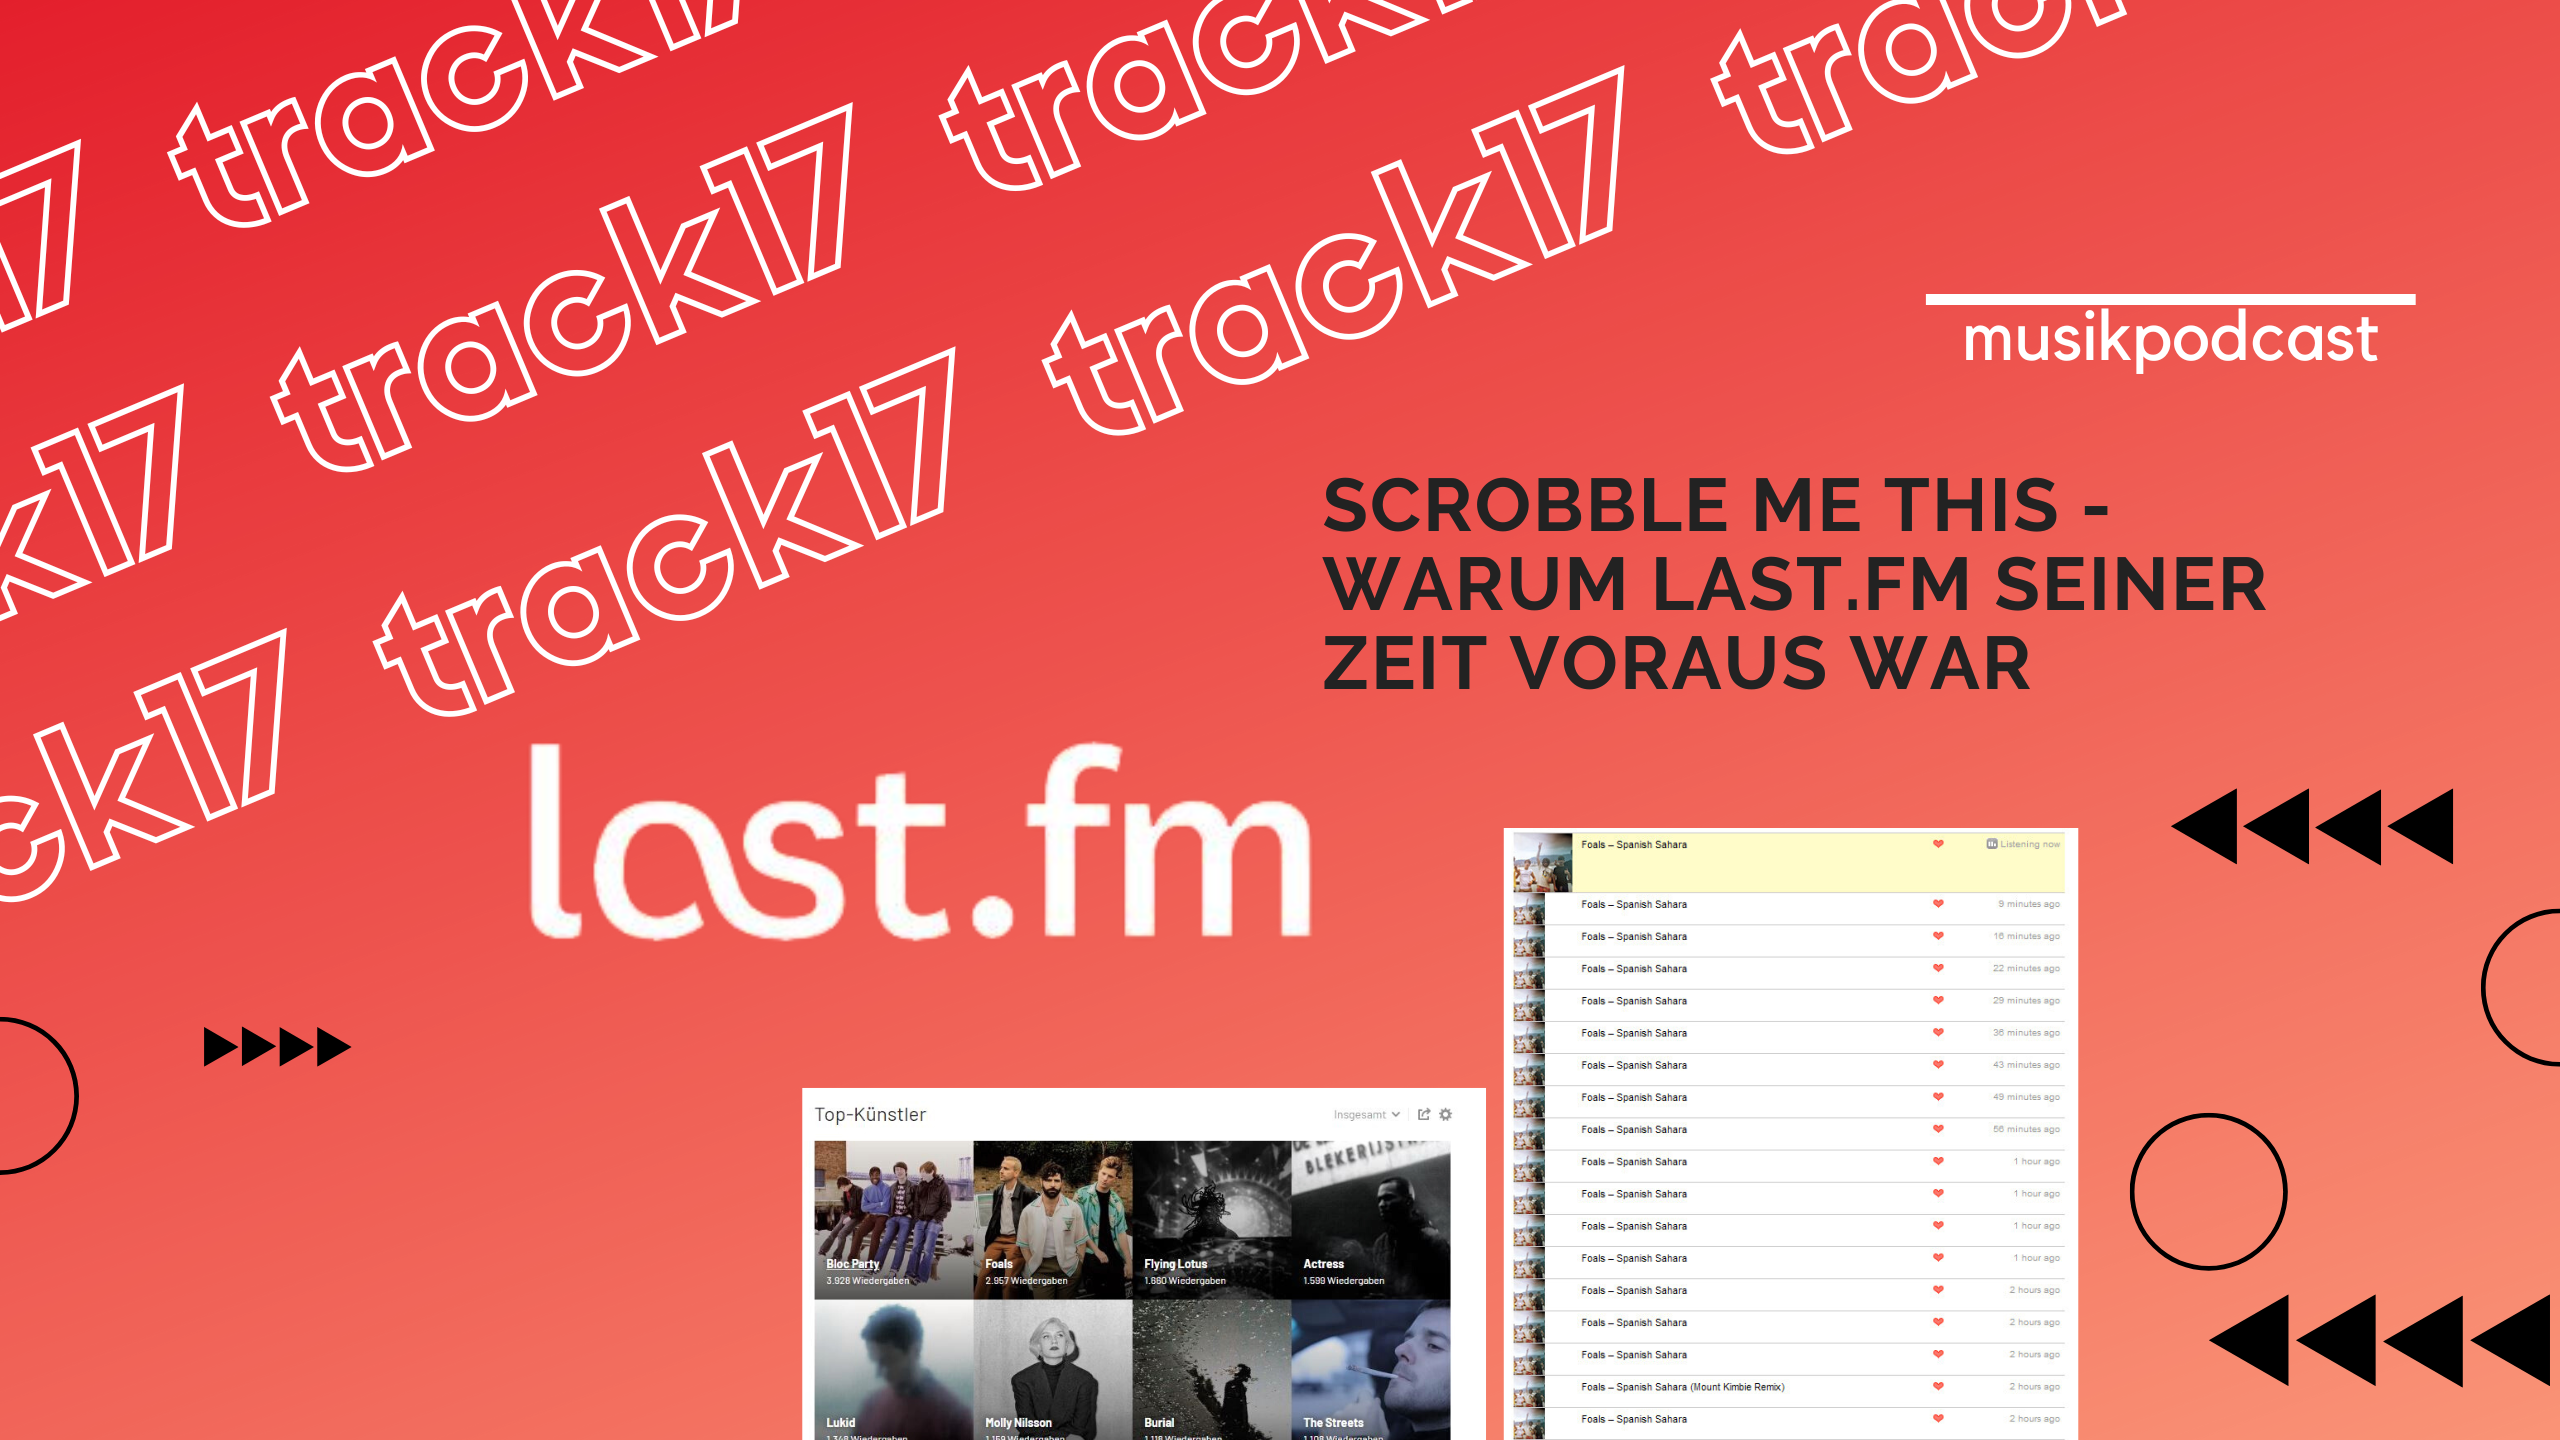 Last.fm - Warum das soziale Netzwerk für Musik-Fans seiner Zeit voraus war (Track17)